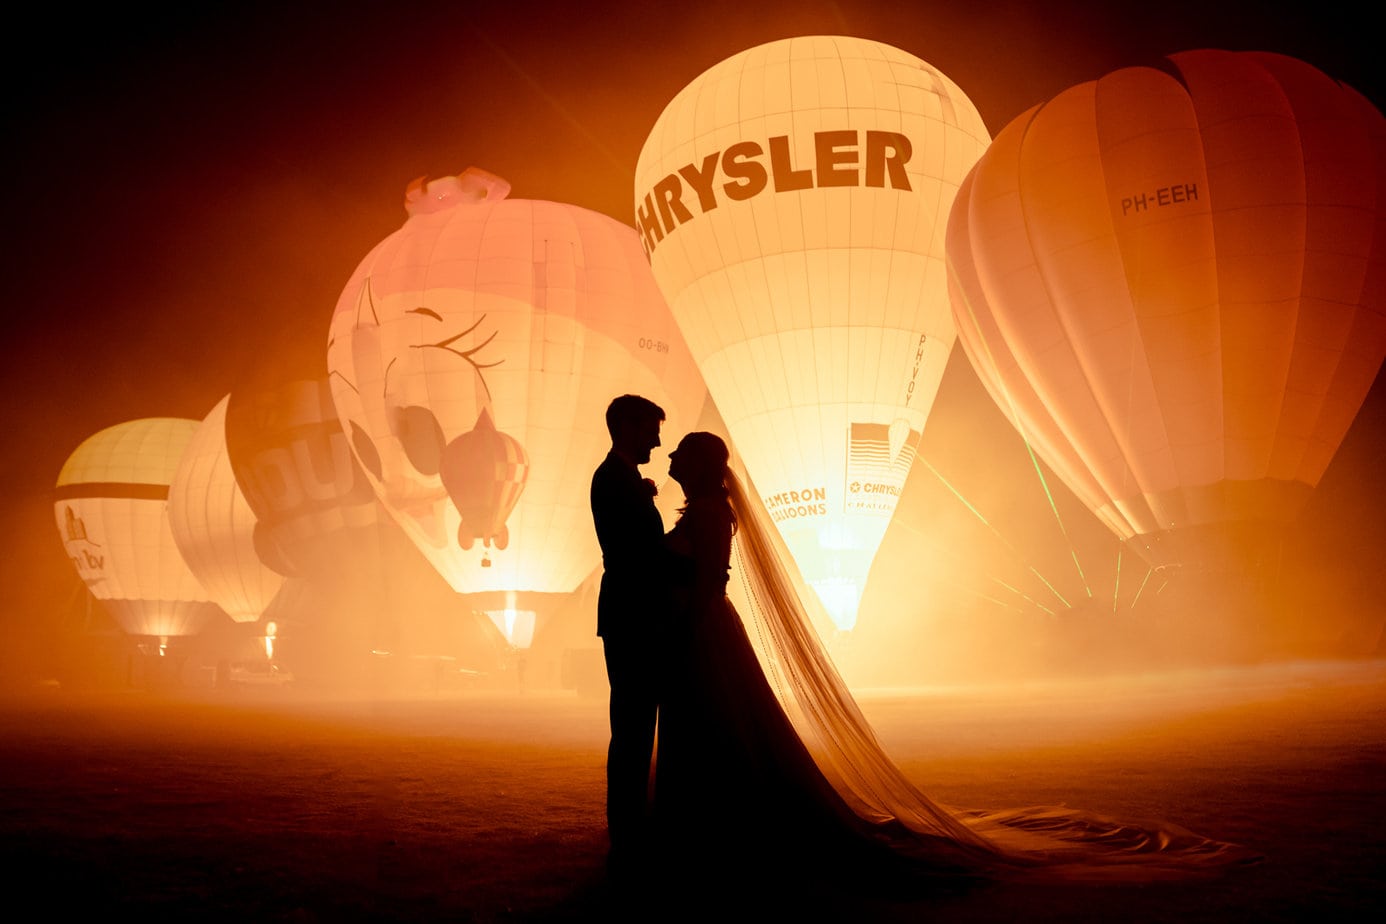 Trouwfotograaf luchtballonnen ballonfiesta bijzondere trouwfoto